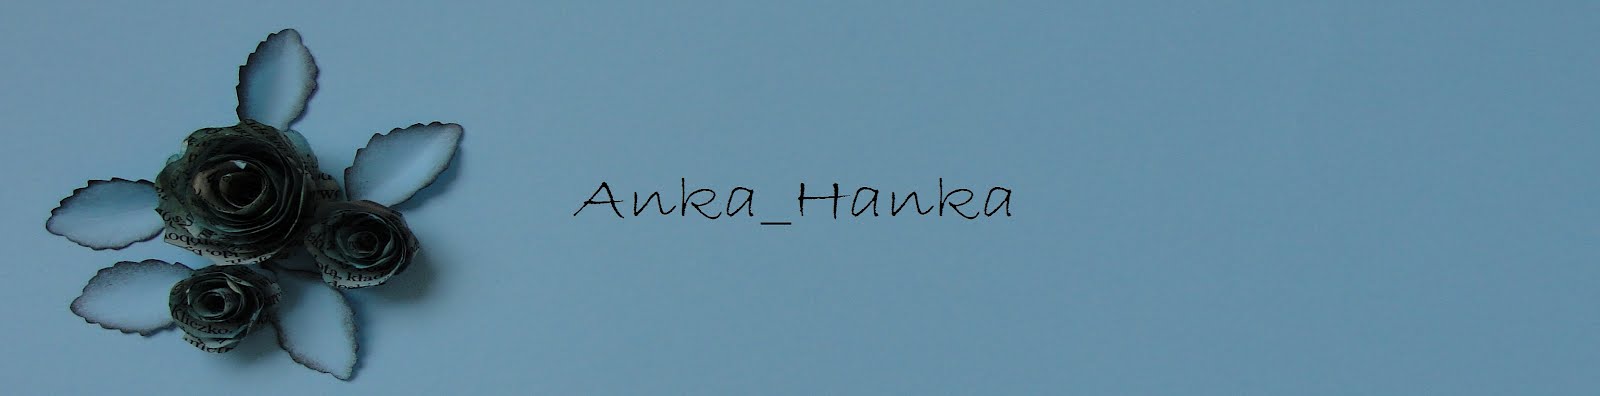 Anka_Hanka